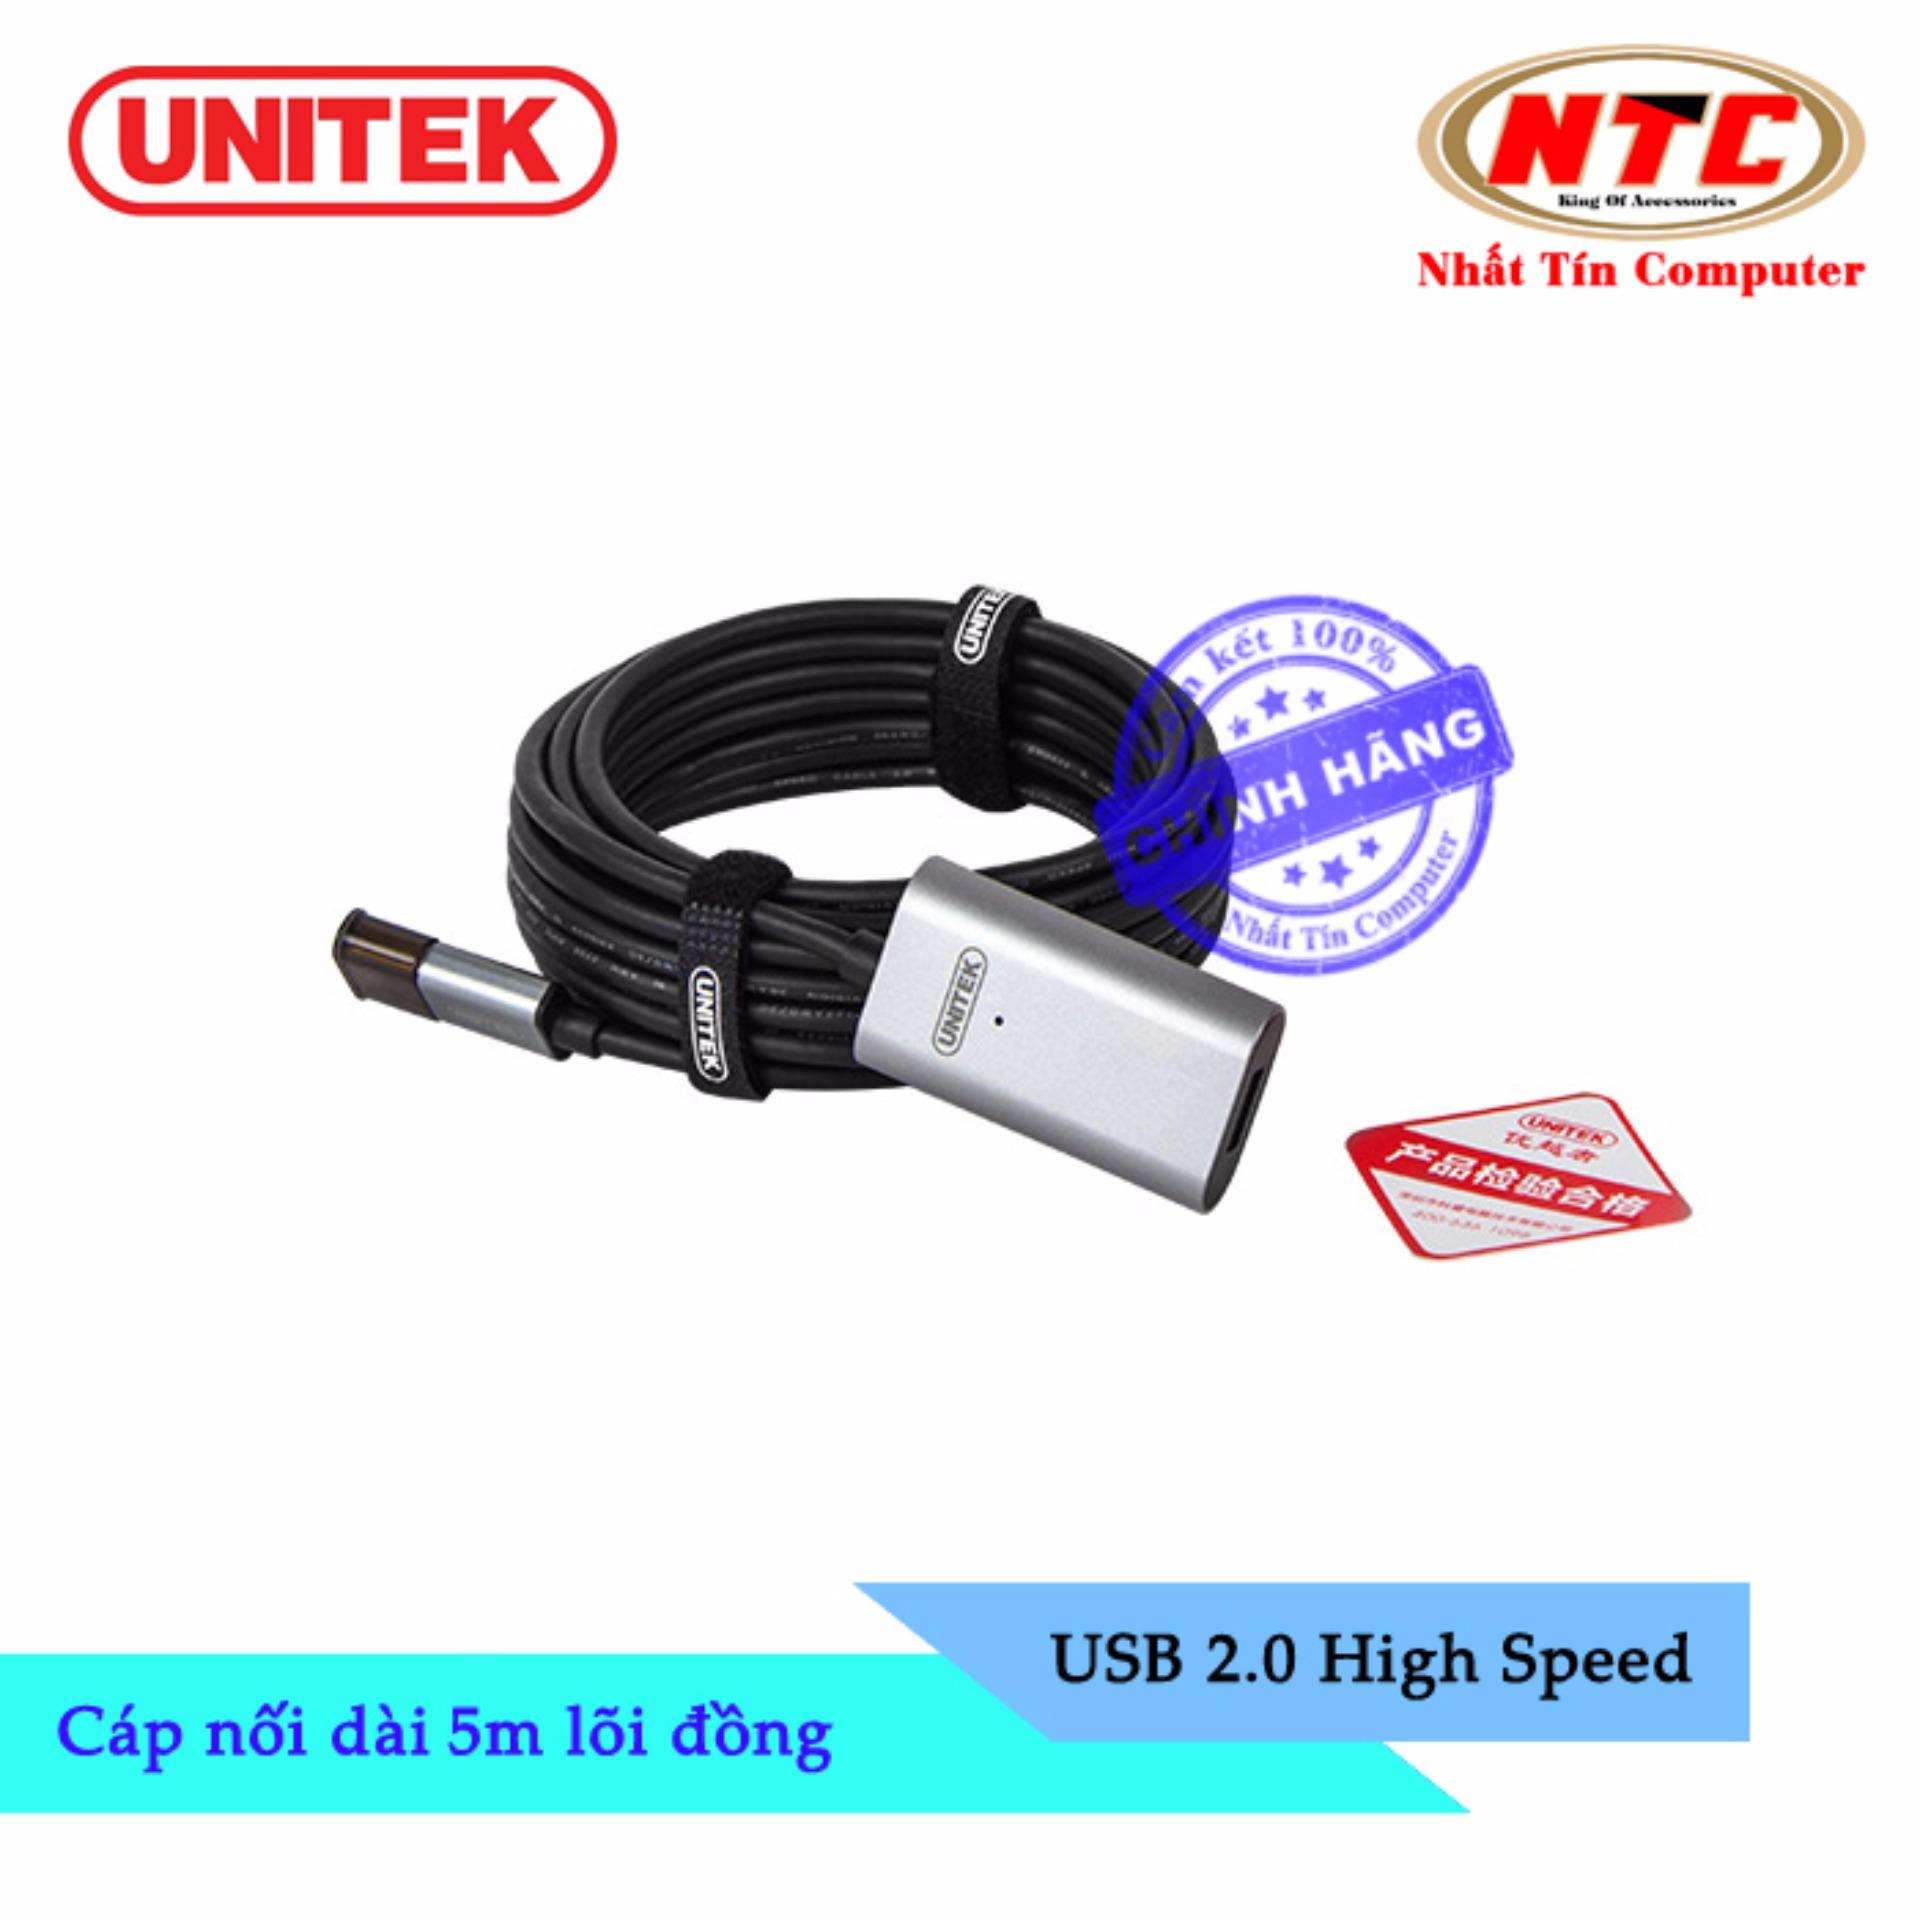 Cáp USB nối dài 2.0 Unitek Y-271 dài 5m lõi đồng - hỗ trợ tương thích ngược (Đen)